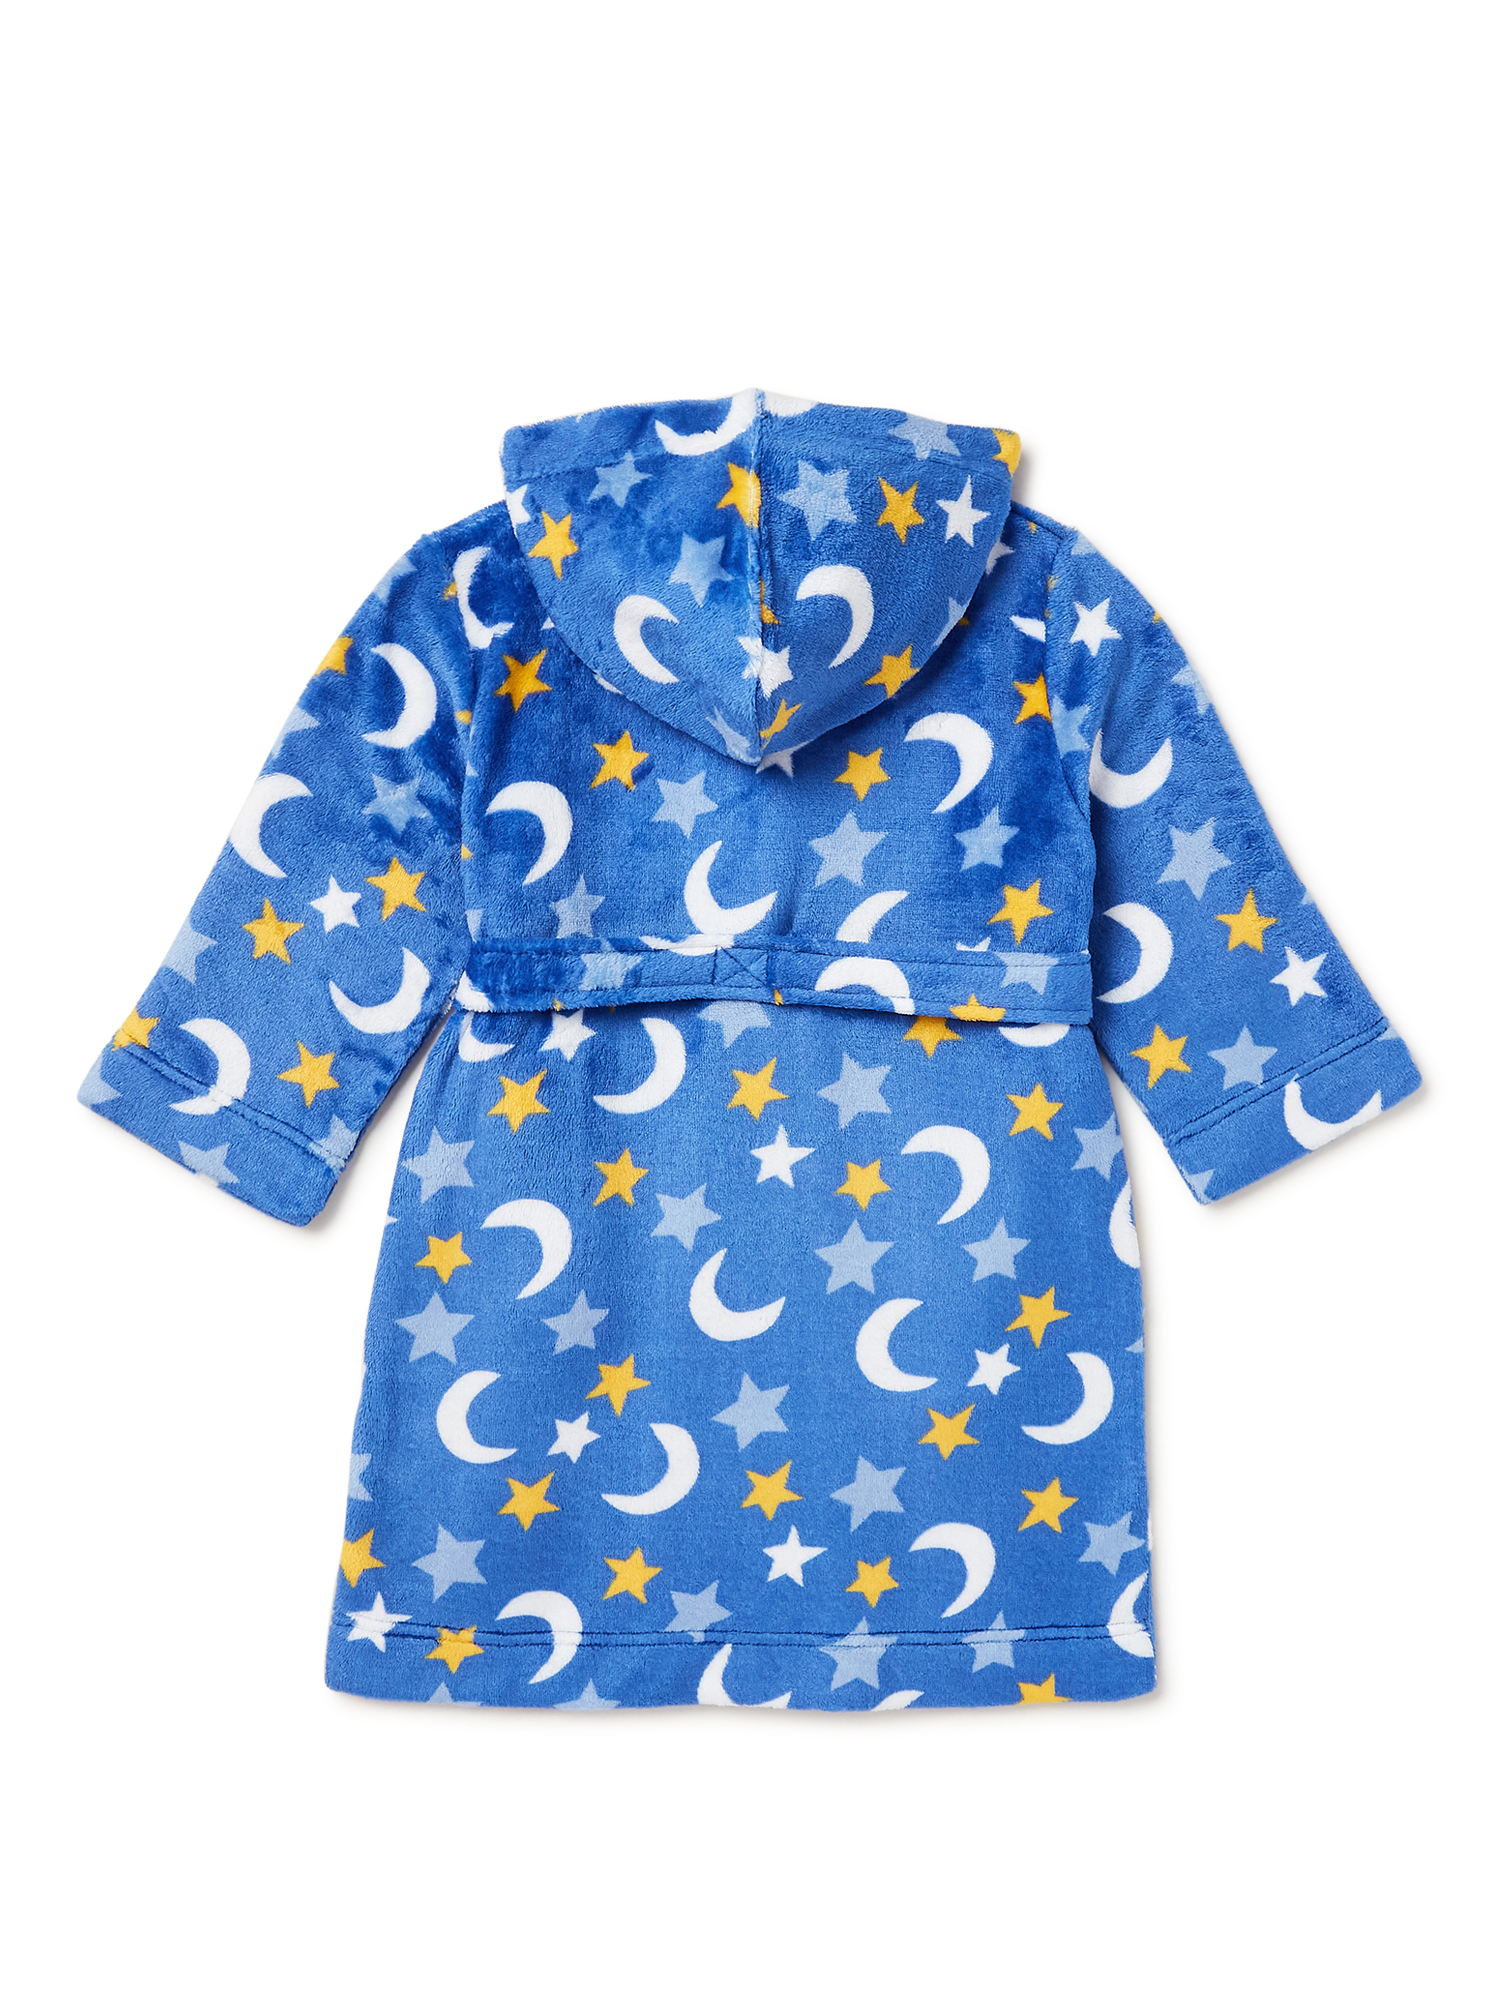 PJ & Me Toddler Boys' Pajama and Robe Set, 3-Piece - image 3 of 3